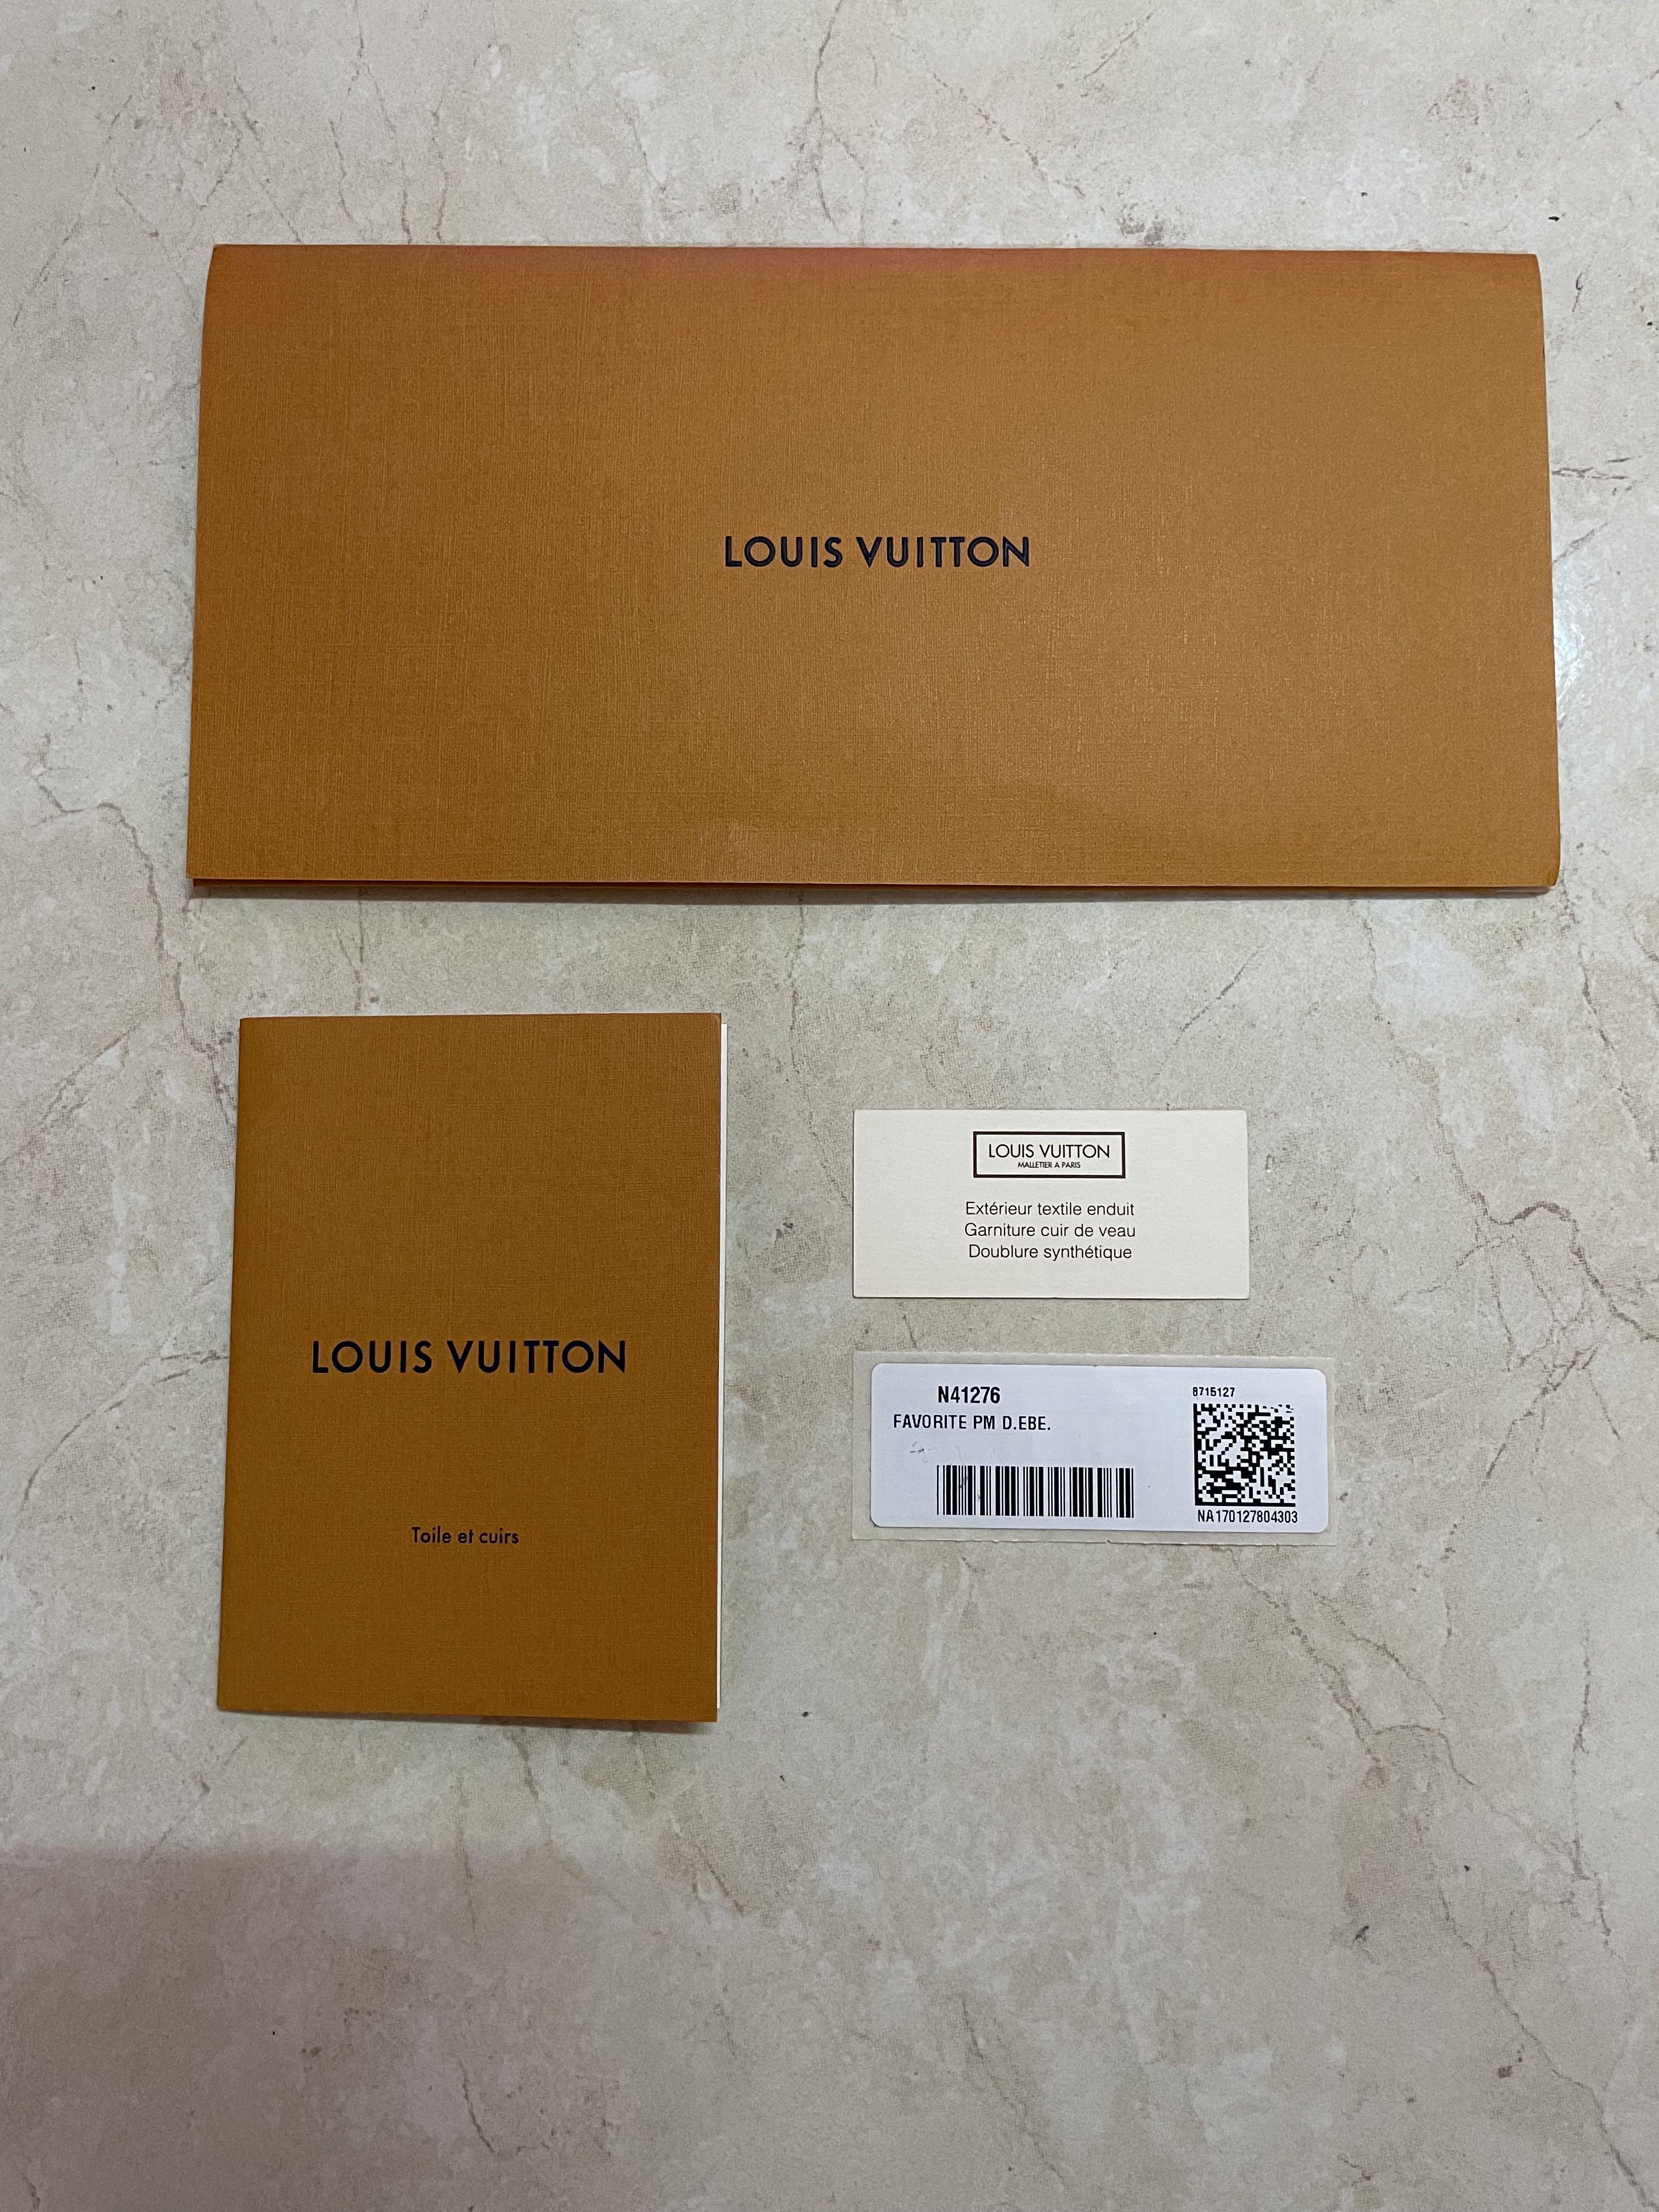 Authentic Louis Vuitton Booklet set for Favorite PM Damier, Luxury